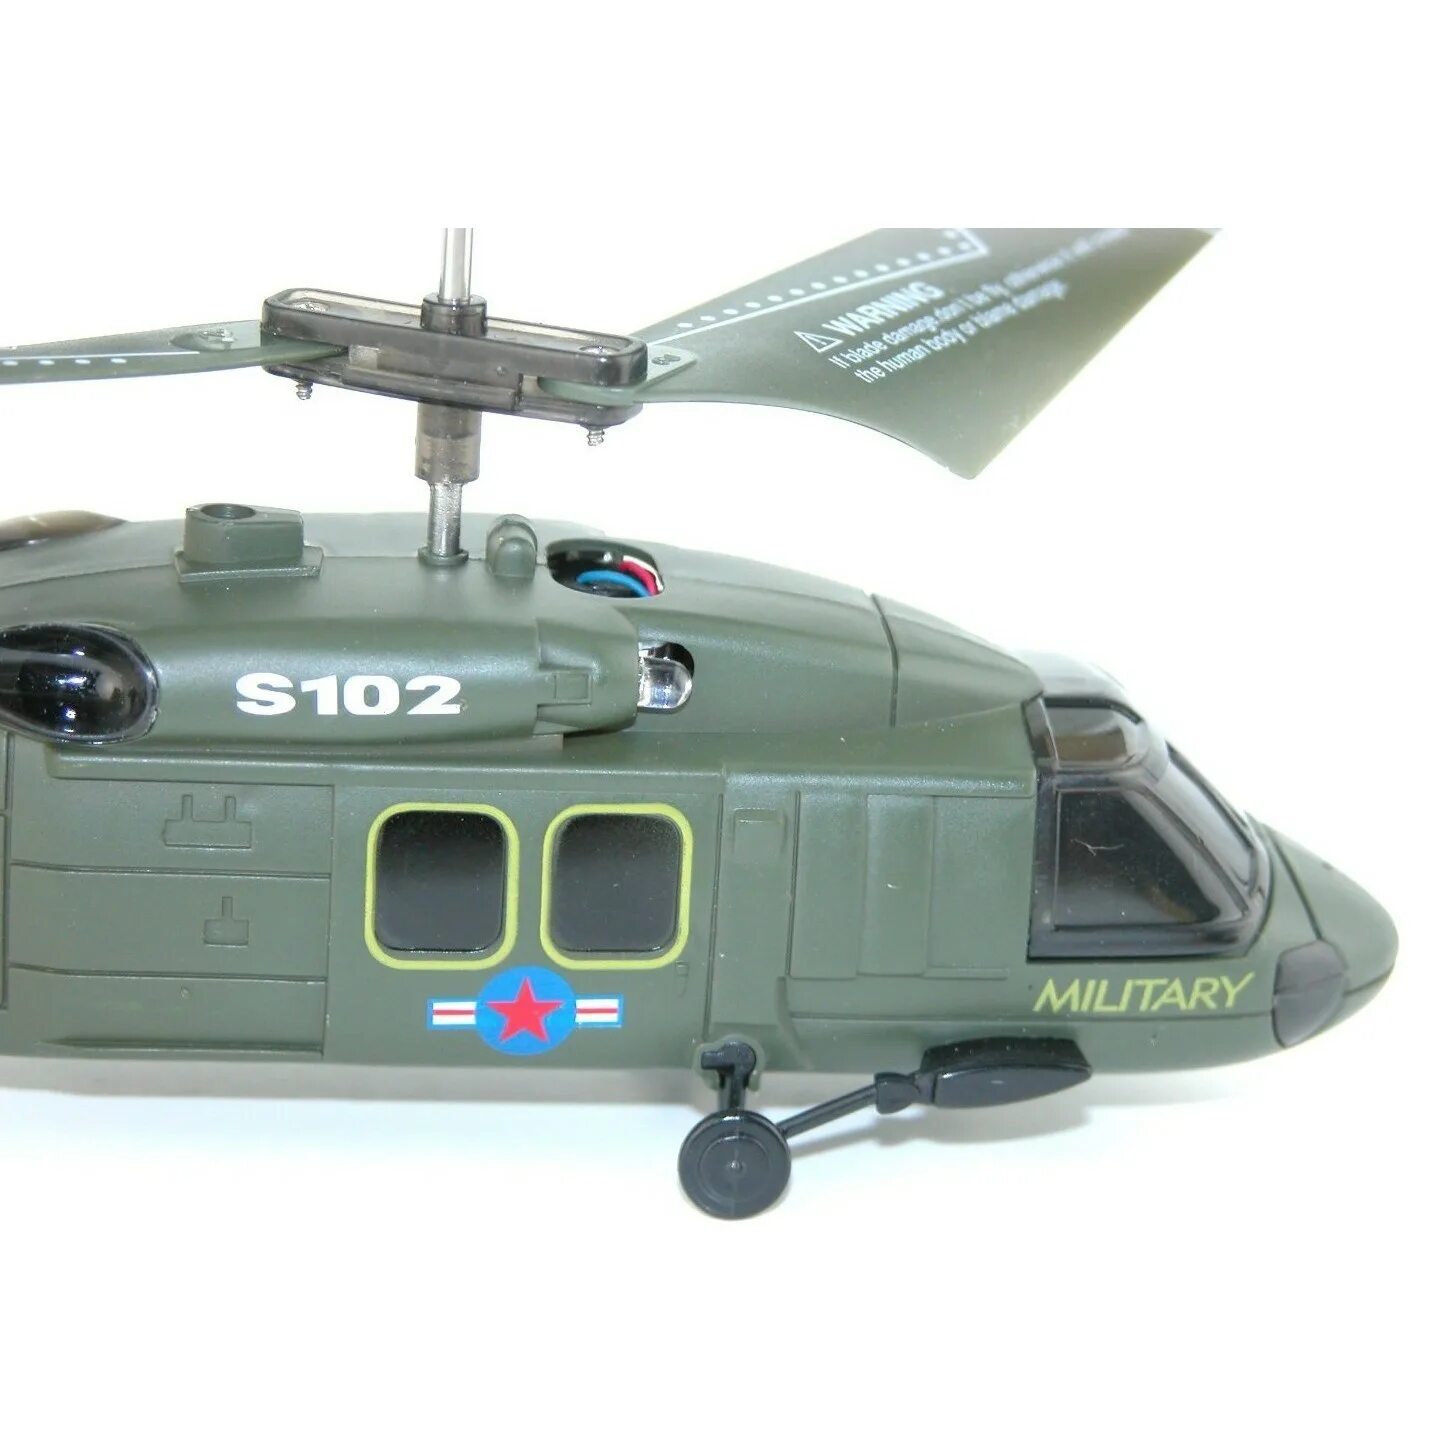 Вертолёт Syma s102g. Вертолет Syma Black Hawk uh-60 (s102g) 20 см. Вертолет Syma s109g зеленый. Радиоуправляемый вертолет Black Hawk. Вертолет купить игрушка